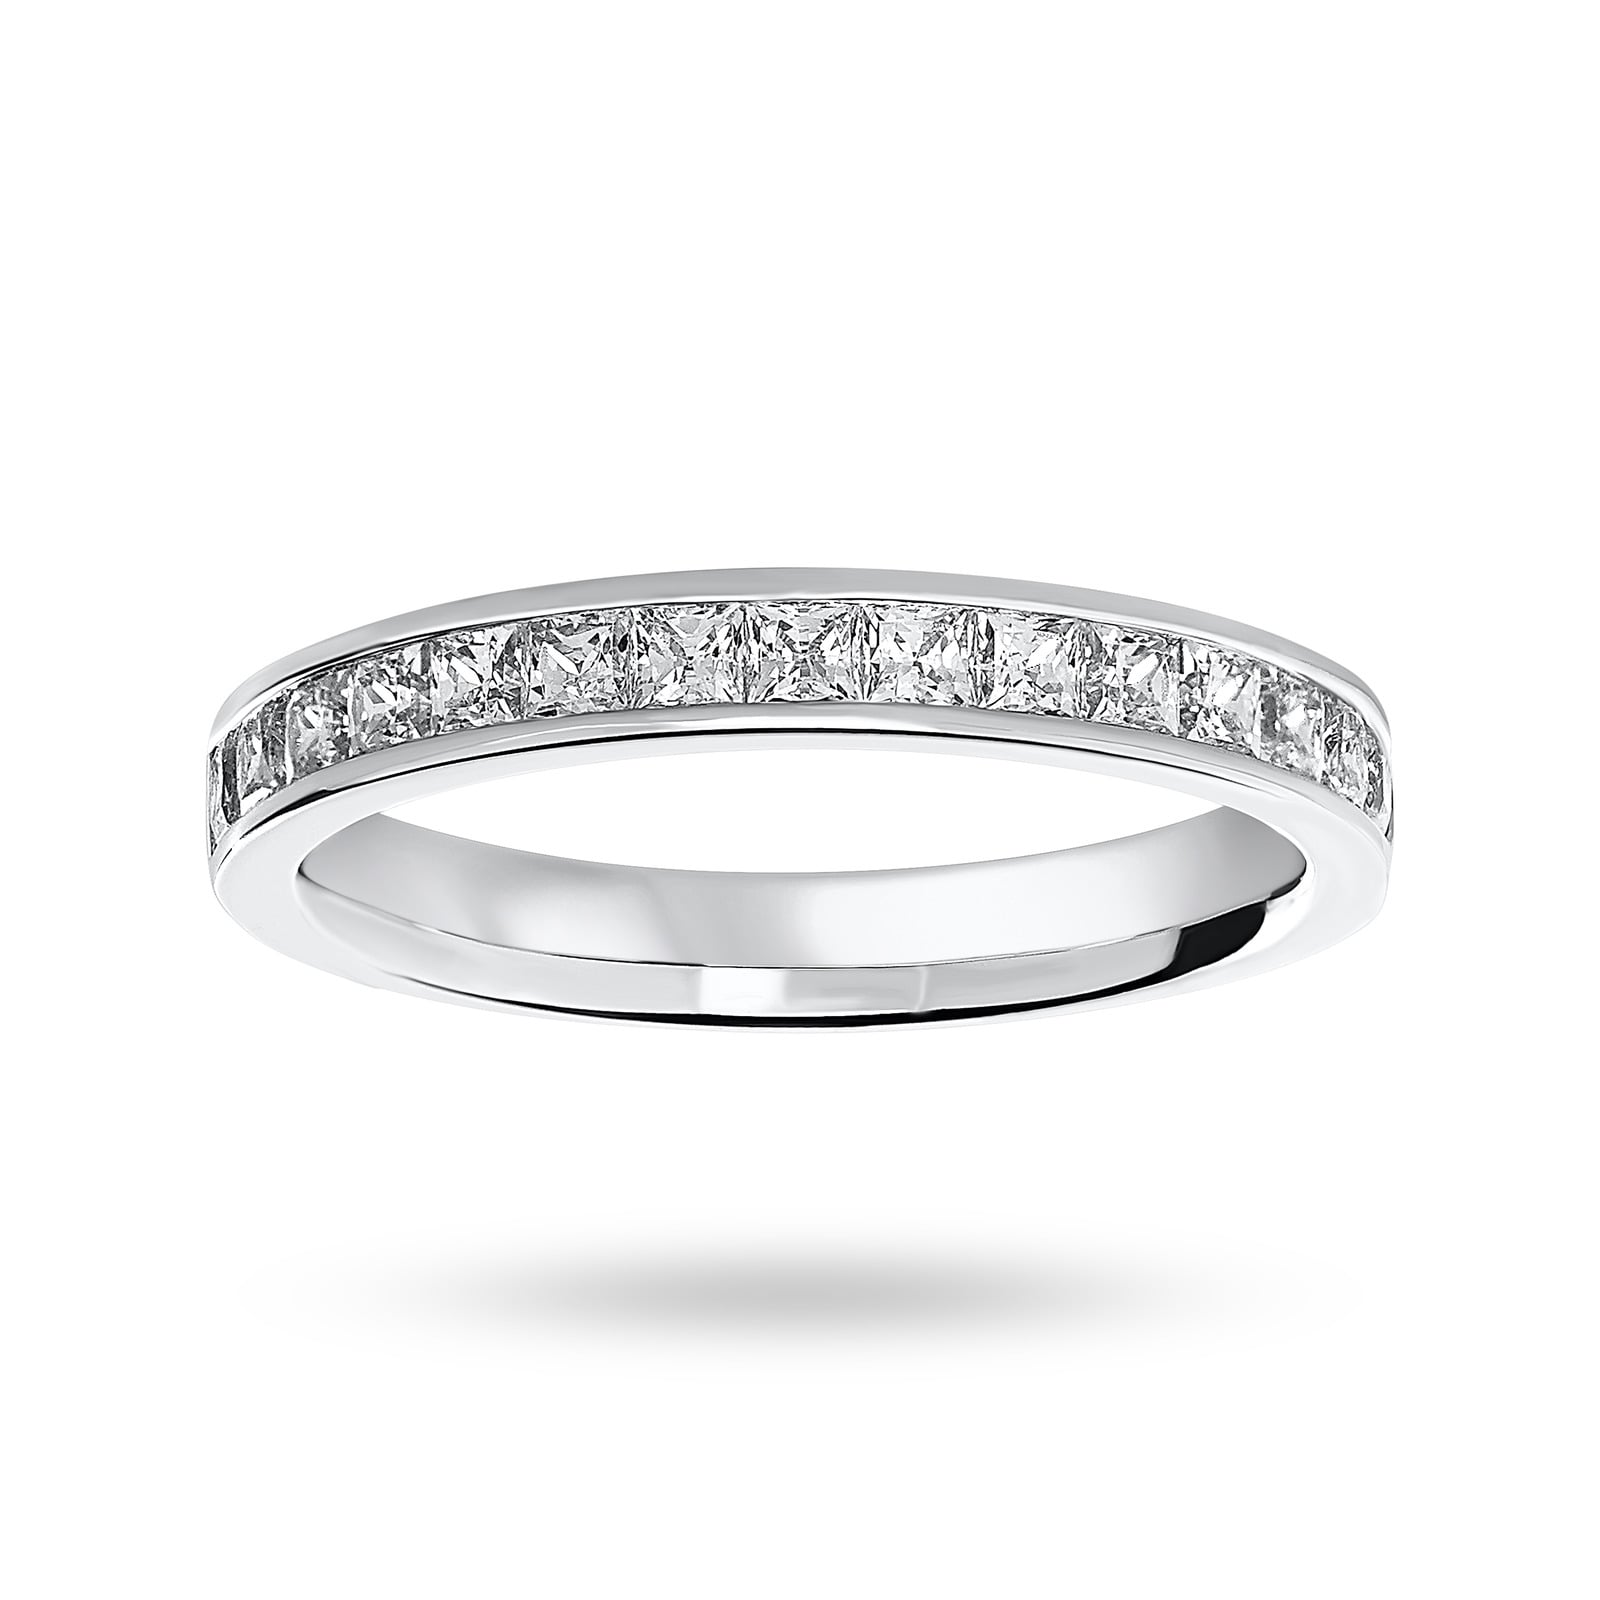 18 Carat White Gold 0.75 Carat Princess Cut Half Eternity Ring - Ring Size N